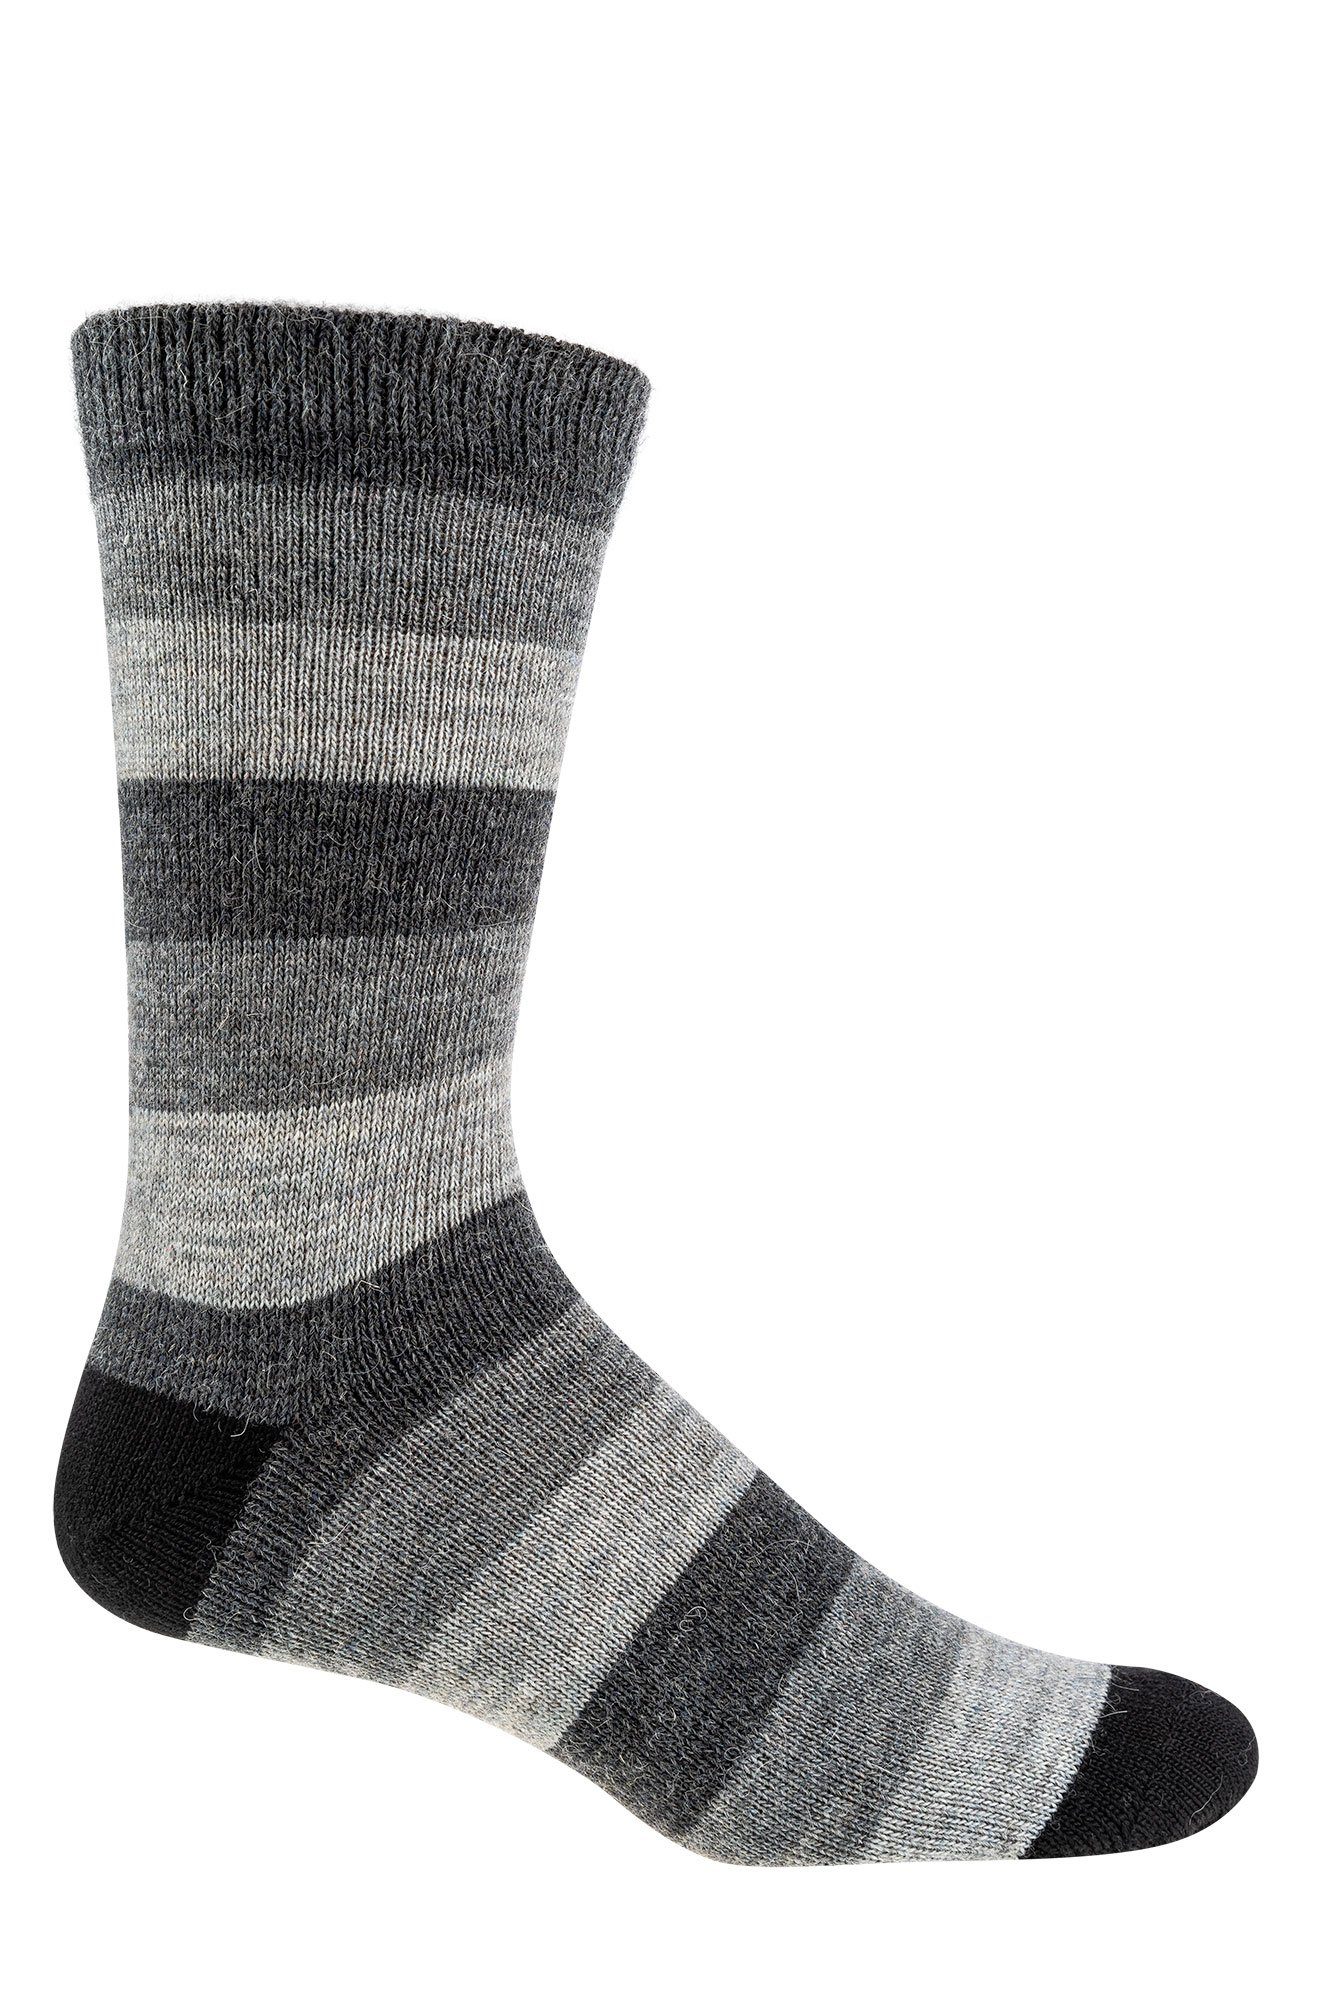 Socks 4 Basicsocken Naturfarben gestreifte Warme Alpaka mit Fun Paar) und Wollsocken Schafwolle Wowerat (3